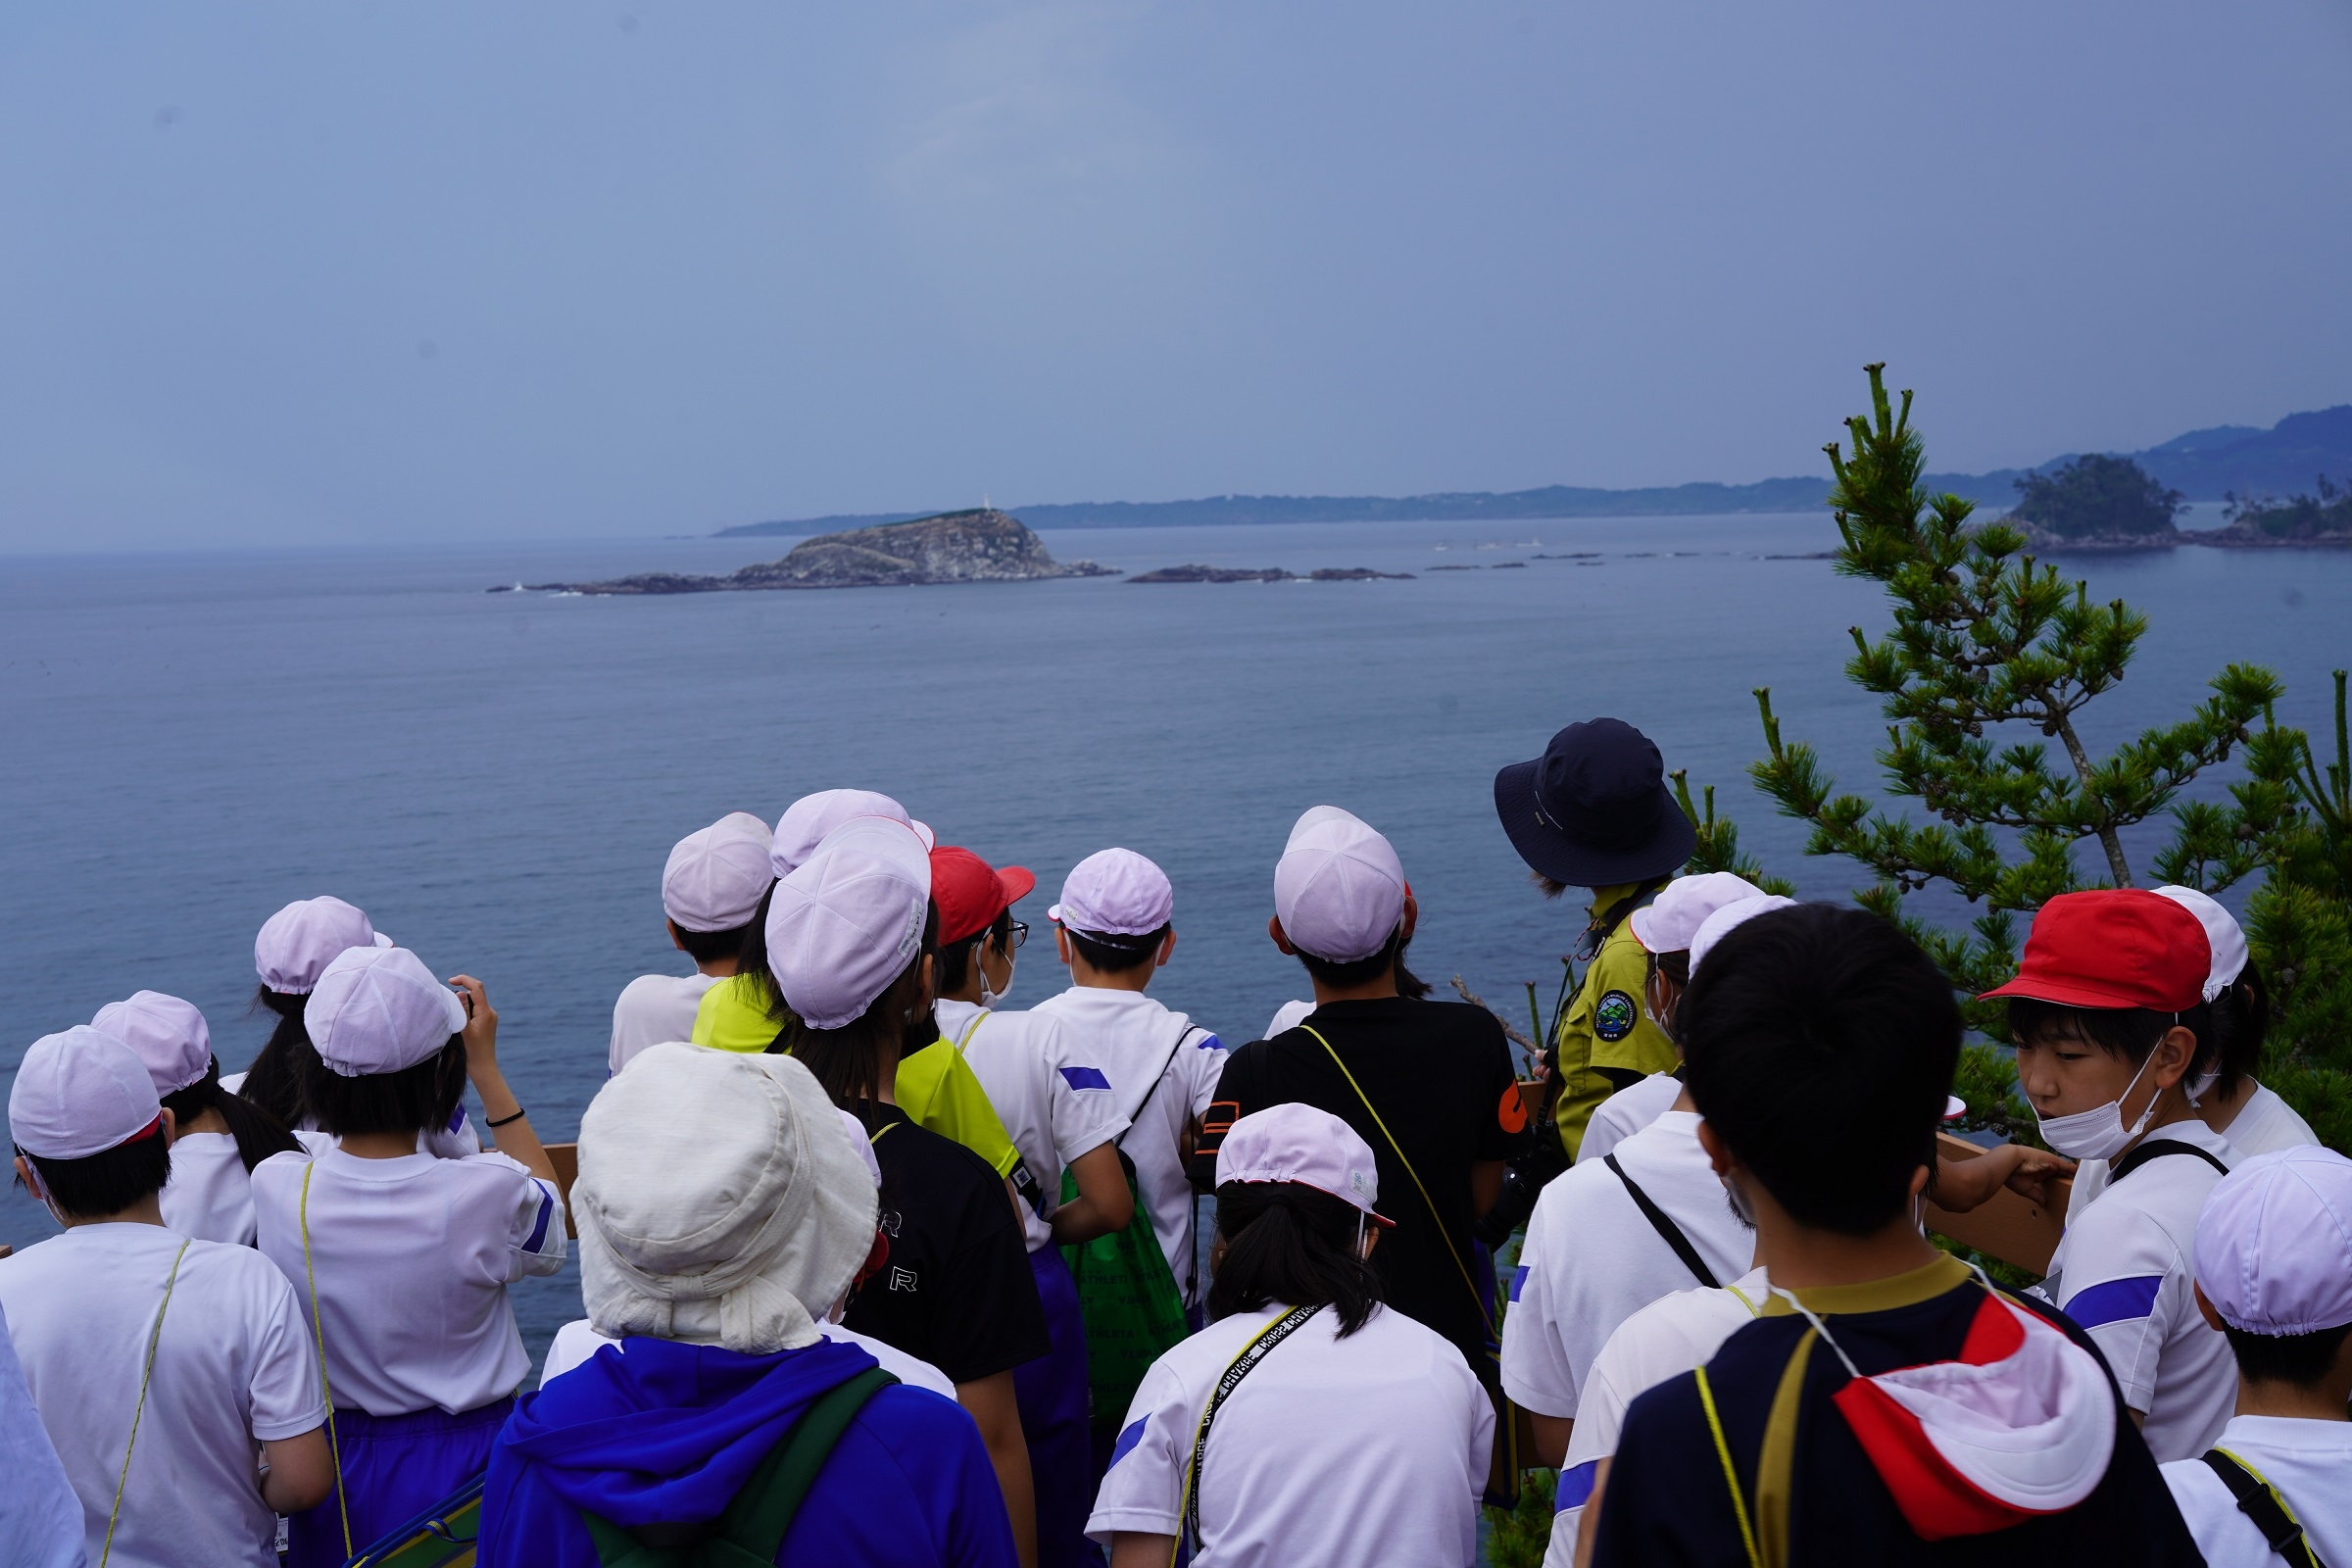 広田小学校トレイル体験にて椿島と青松島を望む